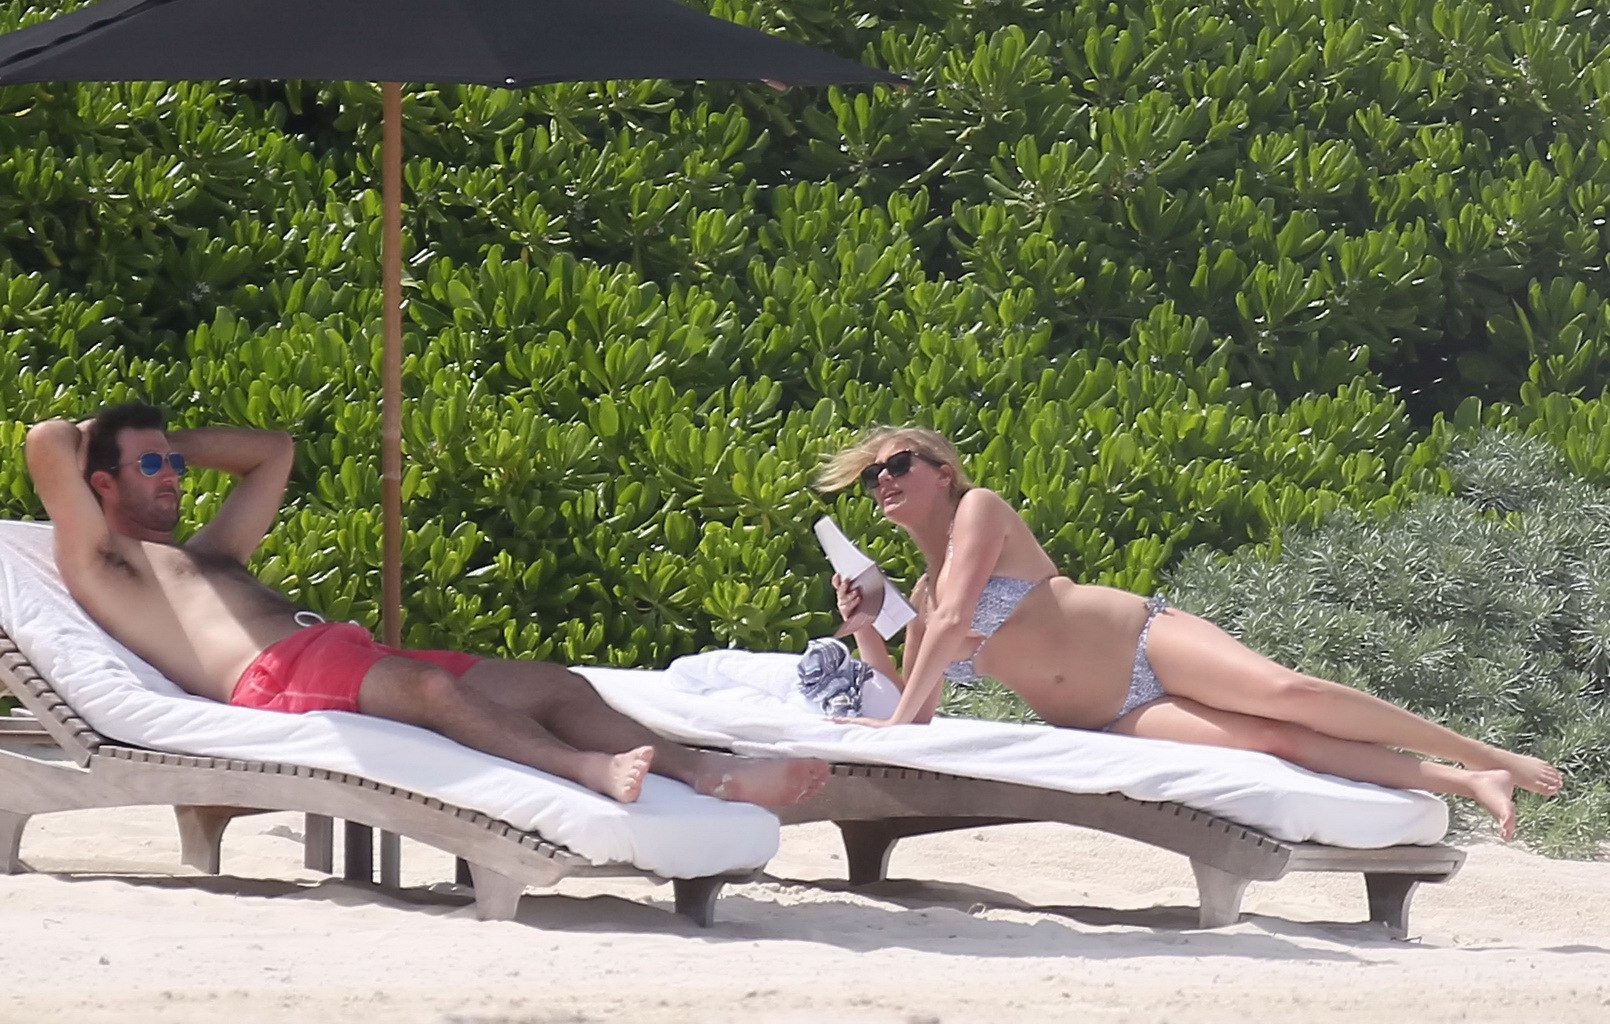 Kate upton che abbronza i suoi meloni lattei e il suo culo in bikini d'argento alla spiaggia in mex
 #75190887